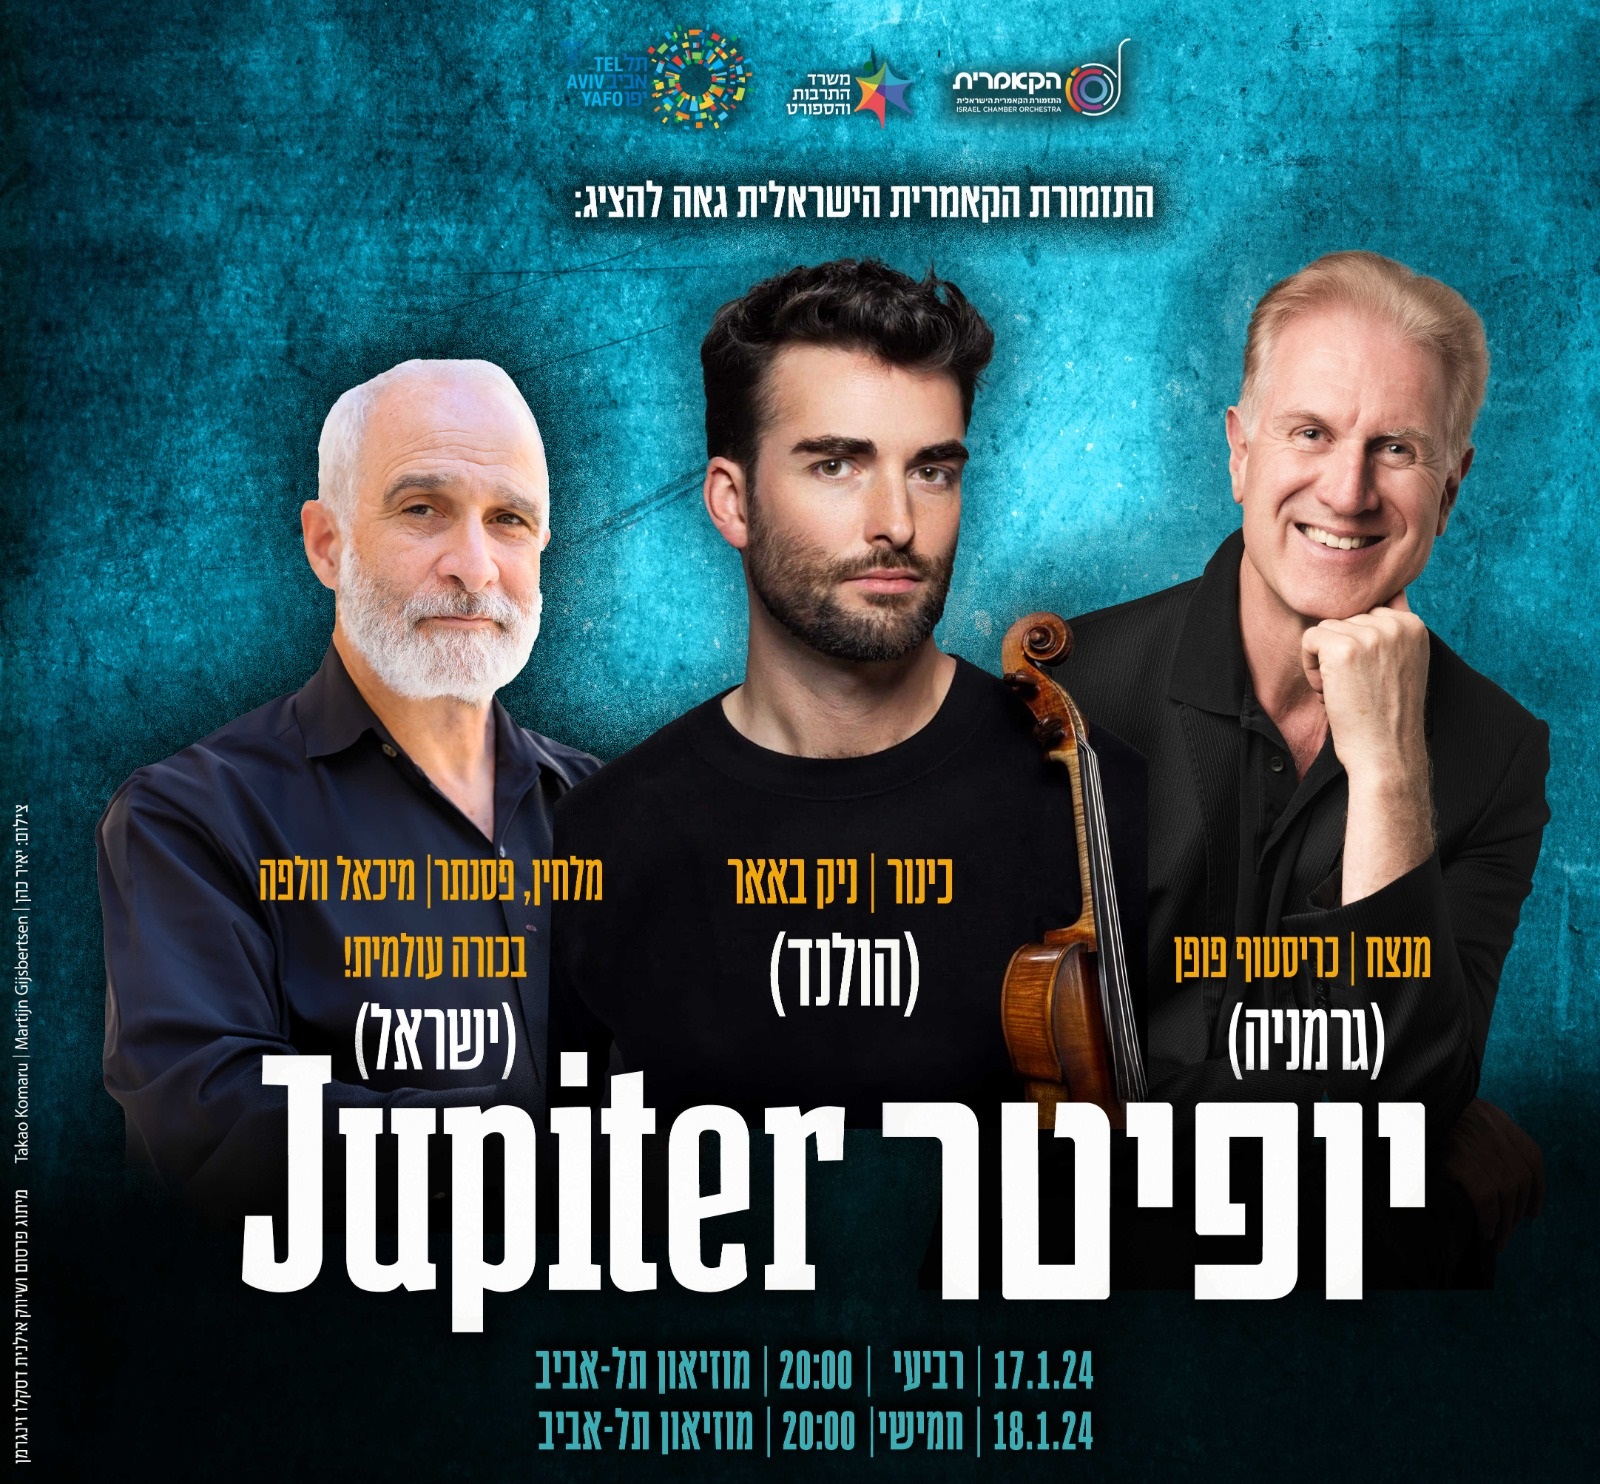 Израильский Камерный Оркестр. «Юпитер» и загадочный концерт Шумана. 17-18 января в Тель-Авиве